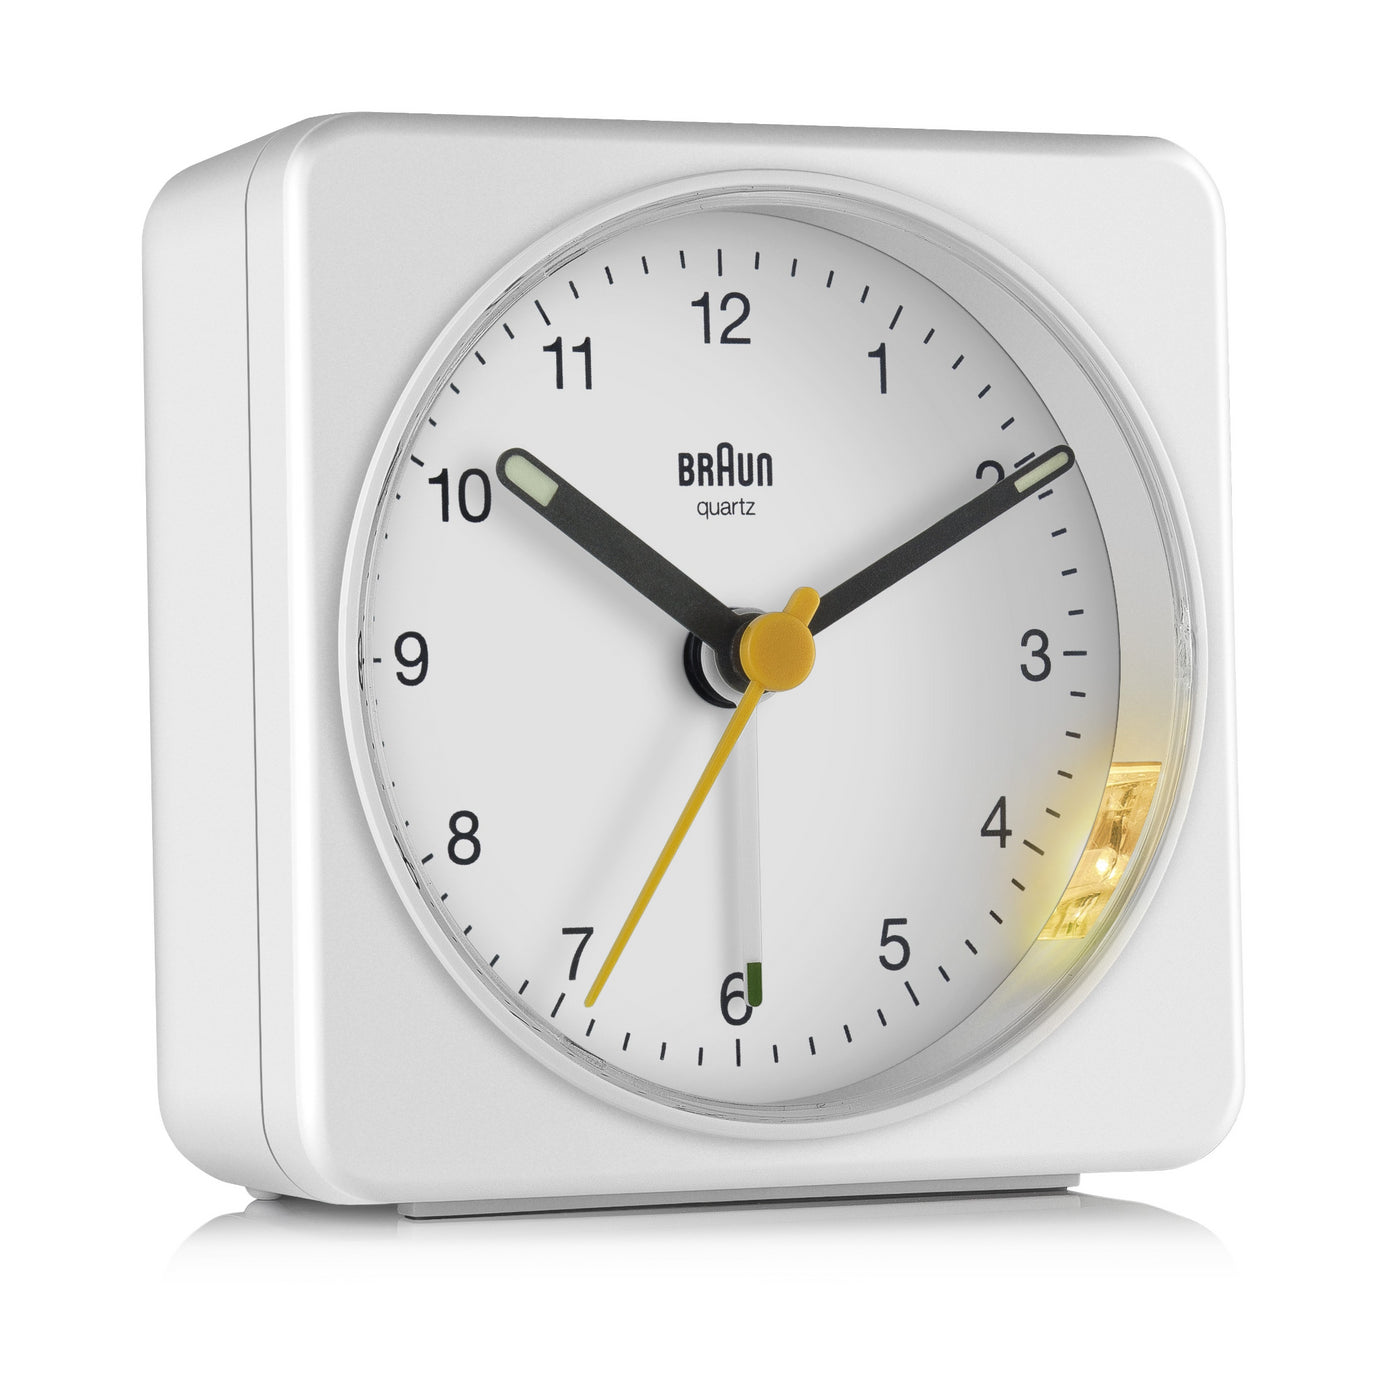 Braun Large Travel Analogue Alarm Clock – White/White